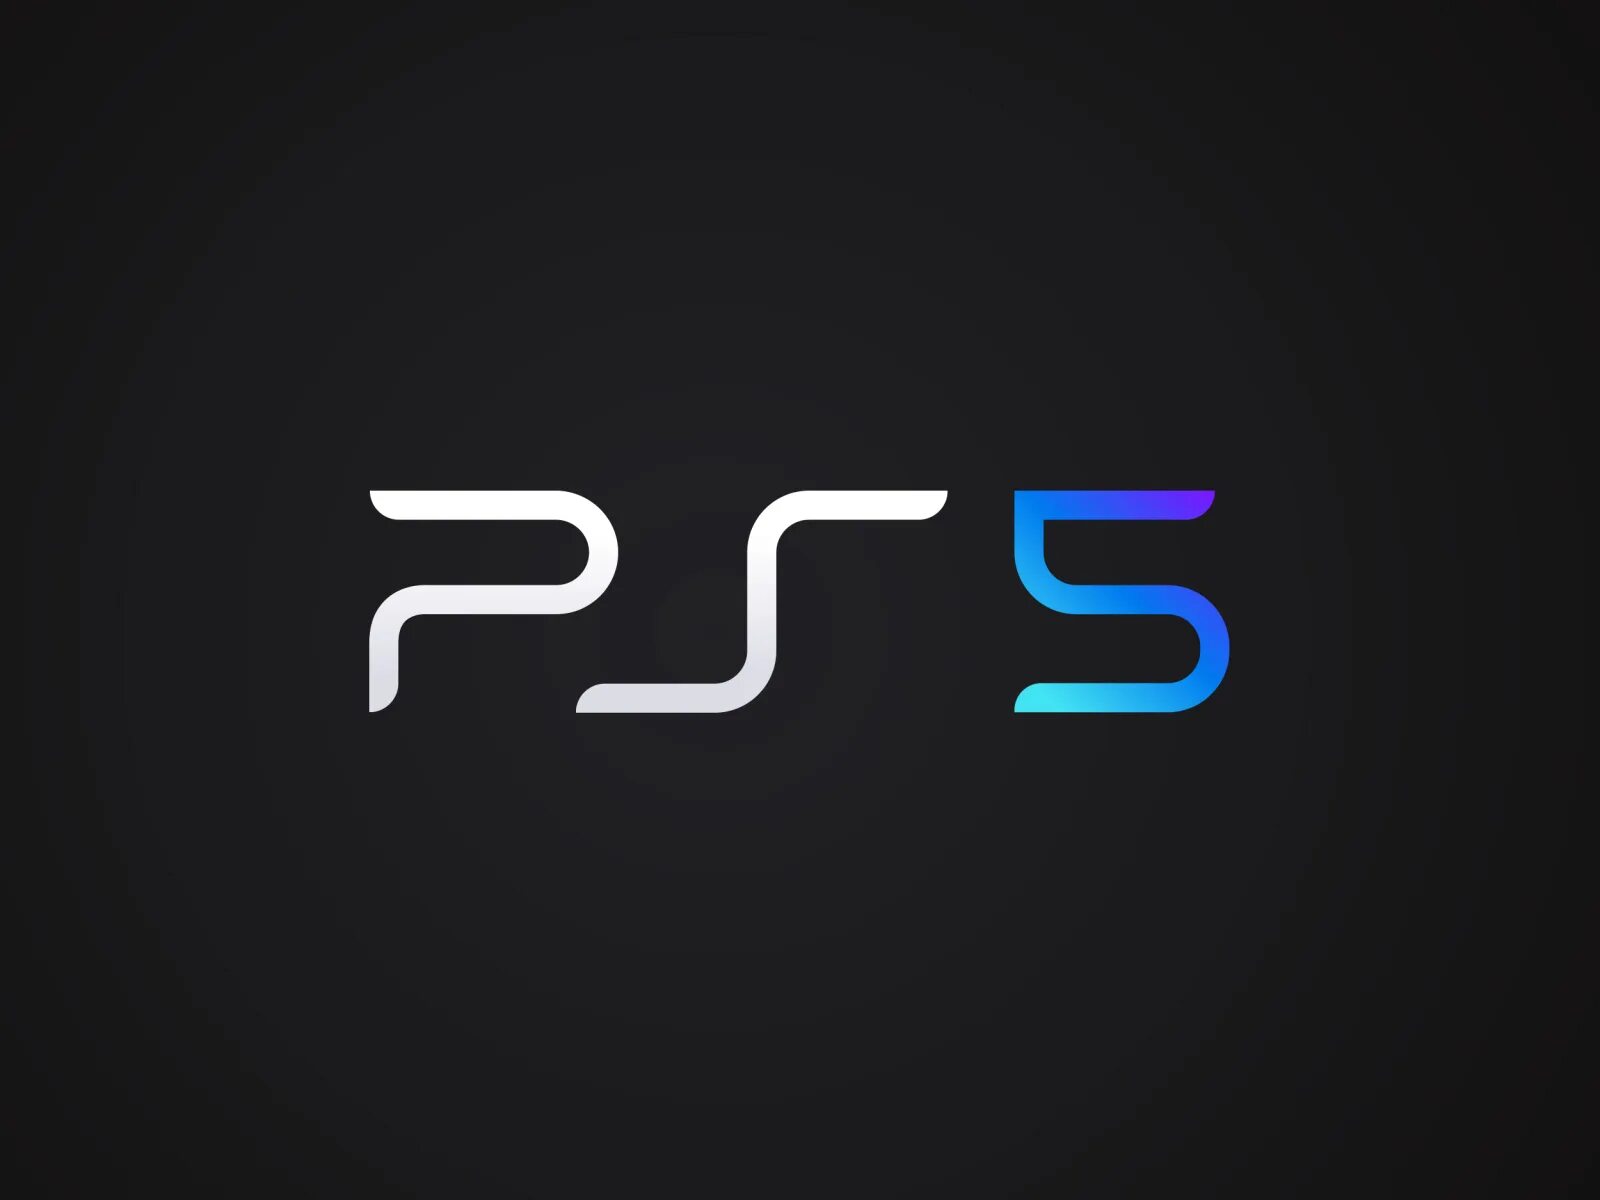 Ps5 turkey. Sony ps5 logo. Sony PLAYSTATION 5. Sony PLAYSTATION 5 лого. Ps4 ps5 логотип.